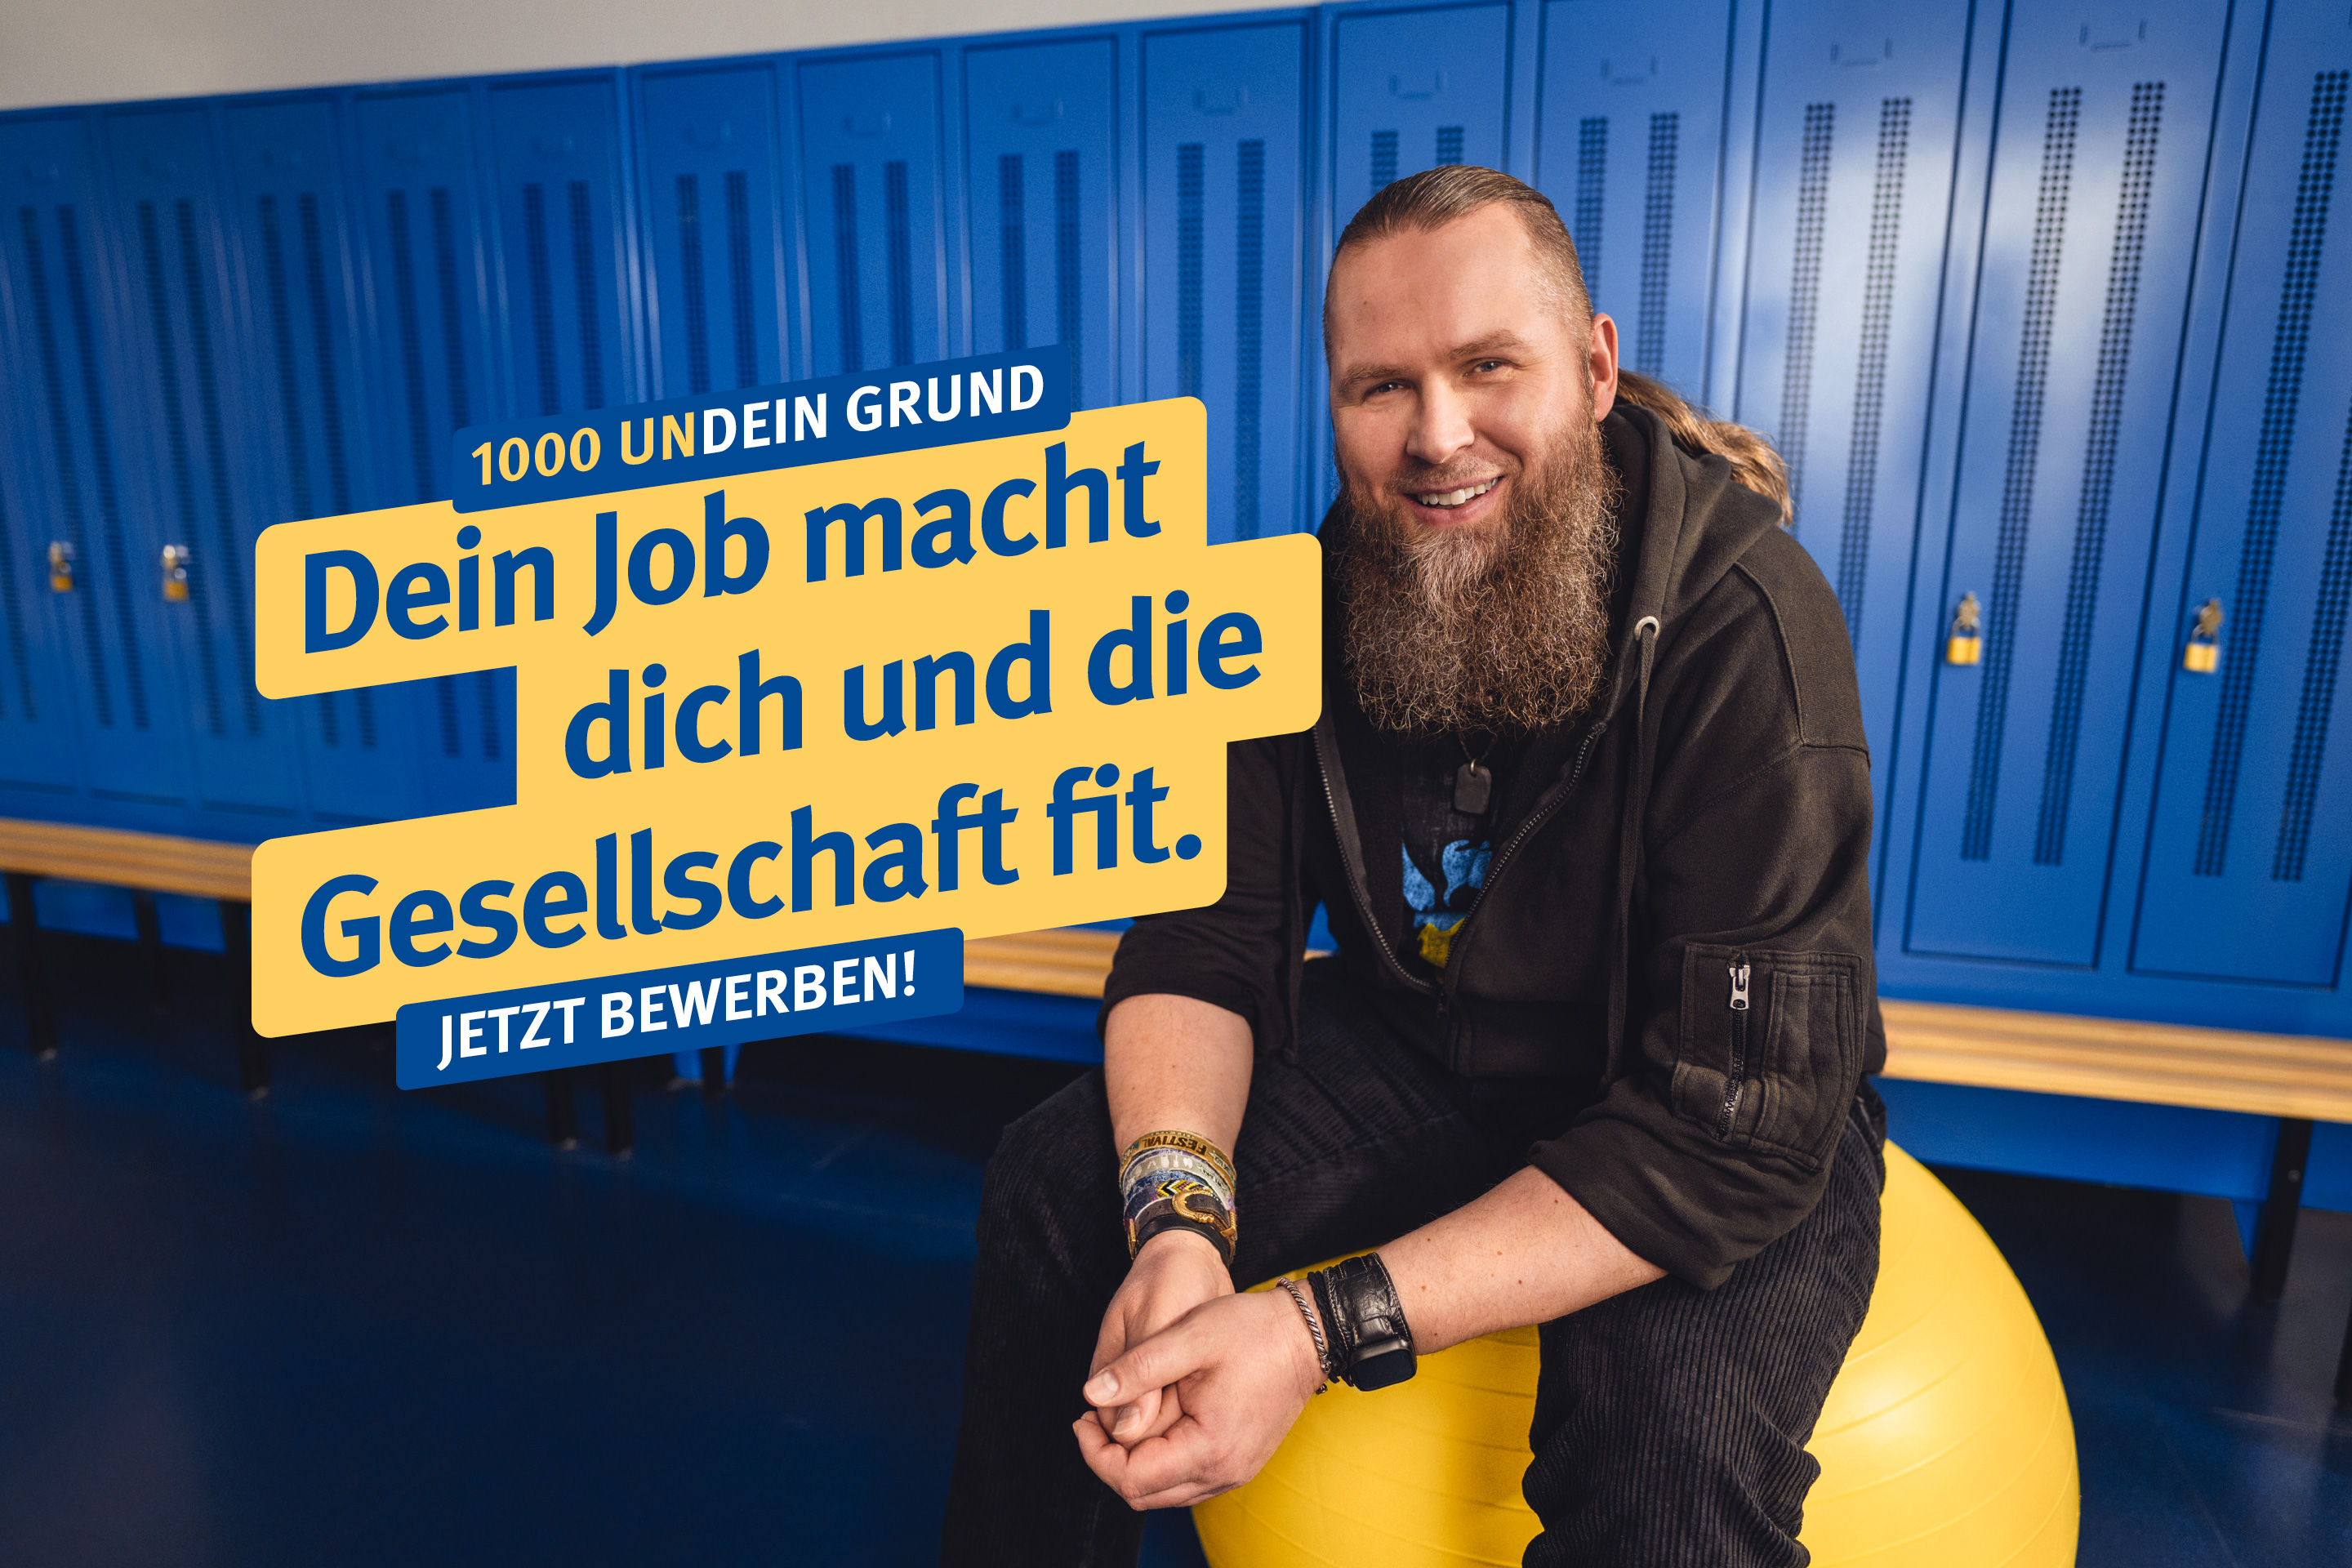 Ein Mann mit Bart sitzt auf einem Gymnastikball in einer Umleidekabine, dazu der Text: : "1000 undein Grund – Dein Job macht dich und die Gesellschaft fit. Jetzt bewerben!"